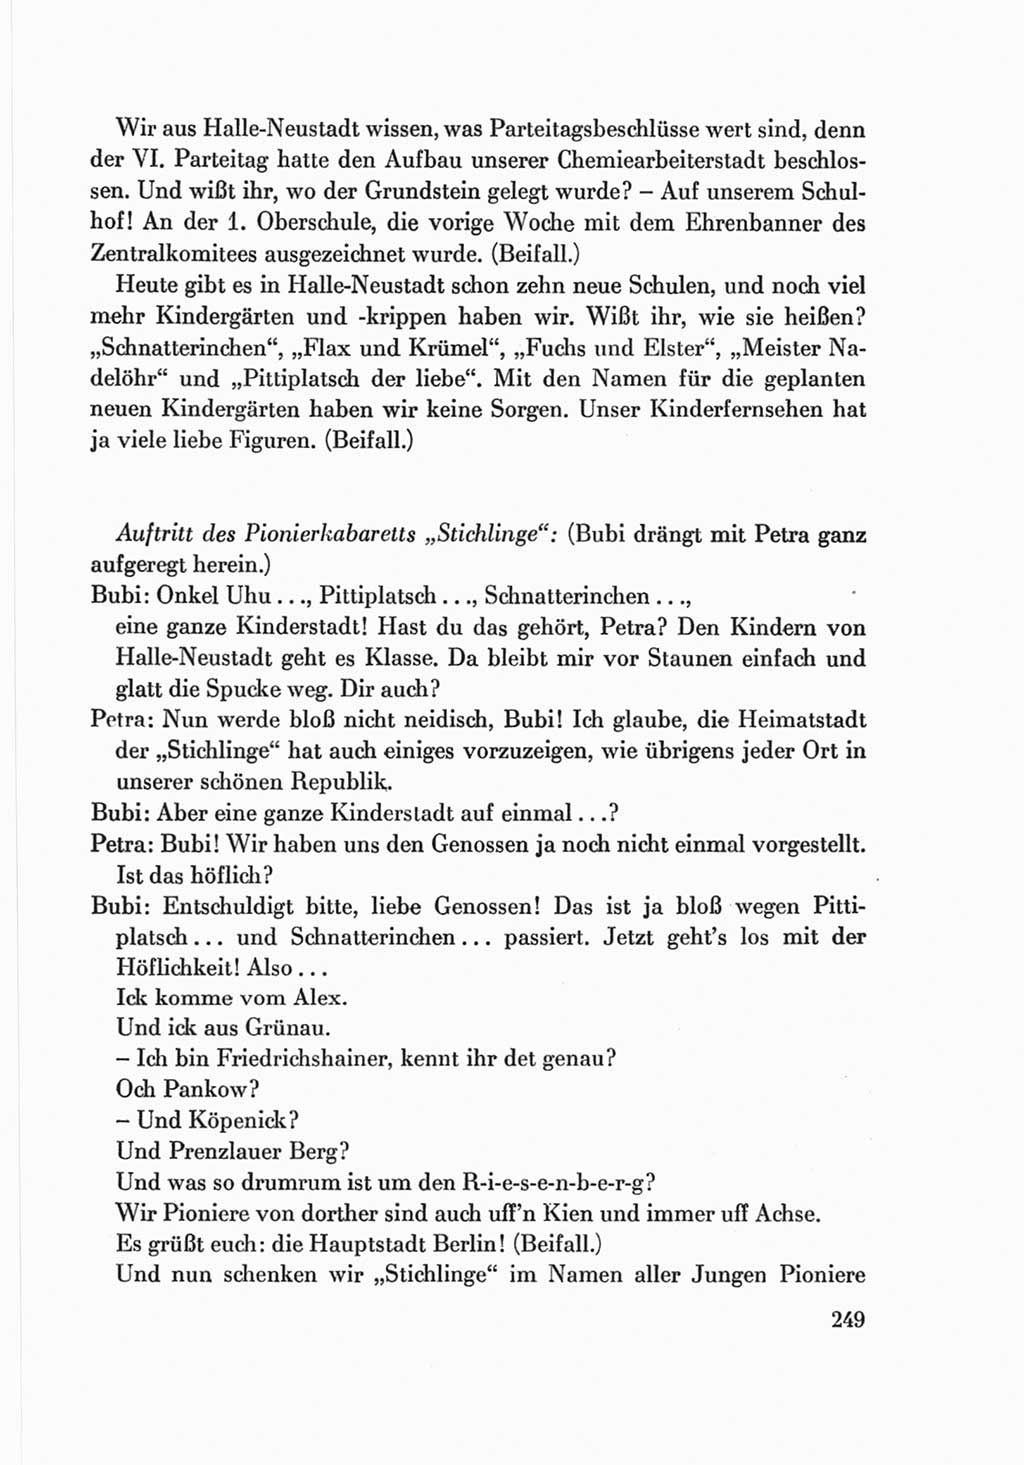 Protokoll der Verhandlungen des Ⅷ. Parteitages der Sozialistischen Einheitspartei Deutschlands (SED) [Deutsche Demokratische Republik (DDR)] 1971, Band 2, Seite 249 (Prot. Verh. Ⅷ. PT SED DDR 1971, Bd. 2, S. 249)